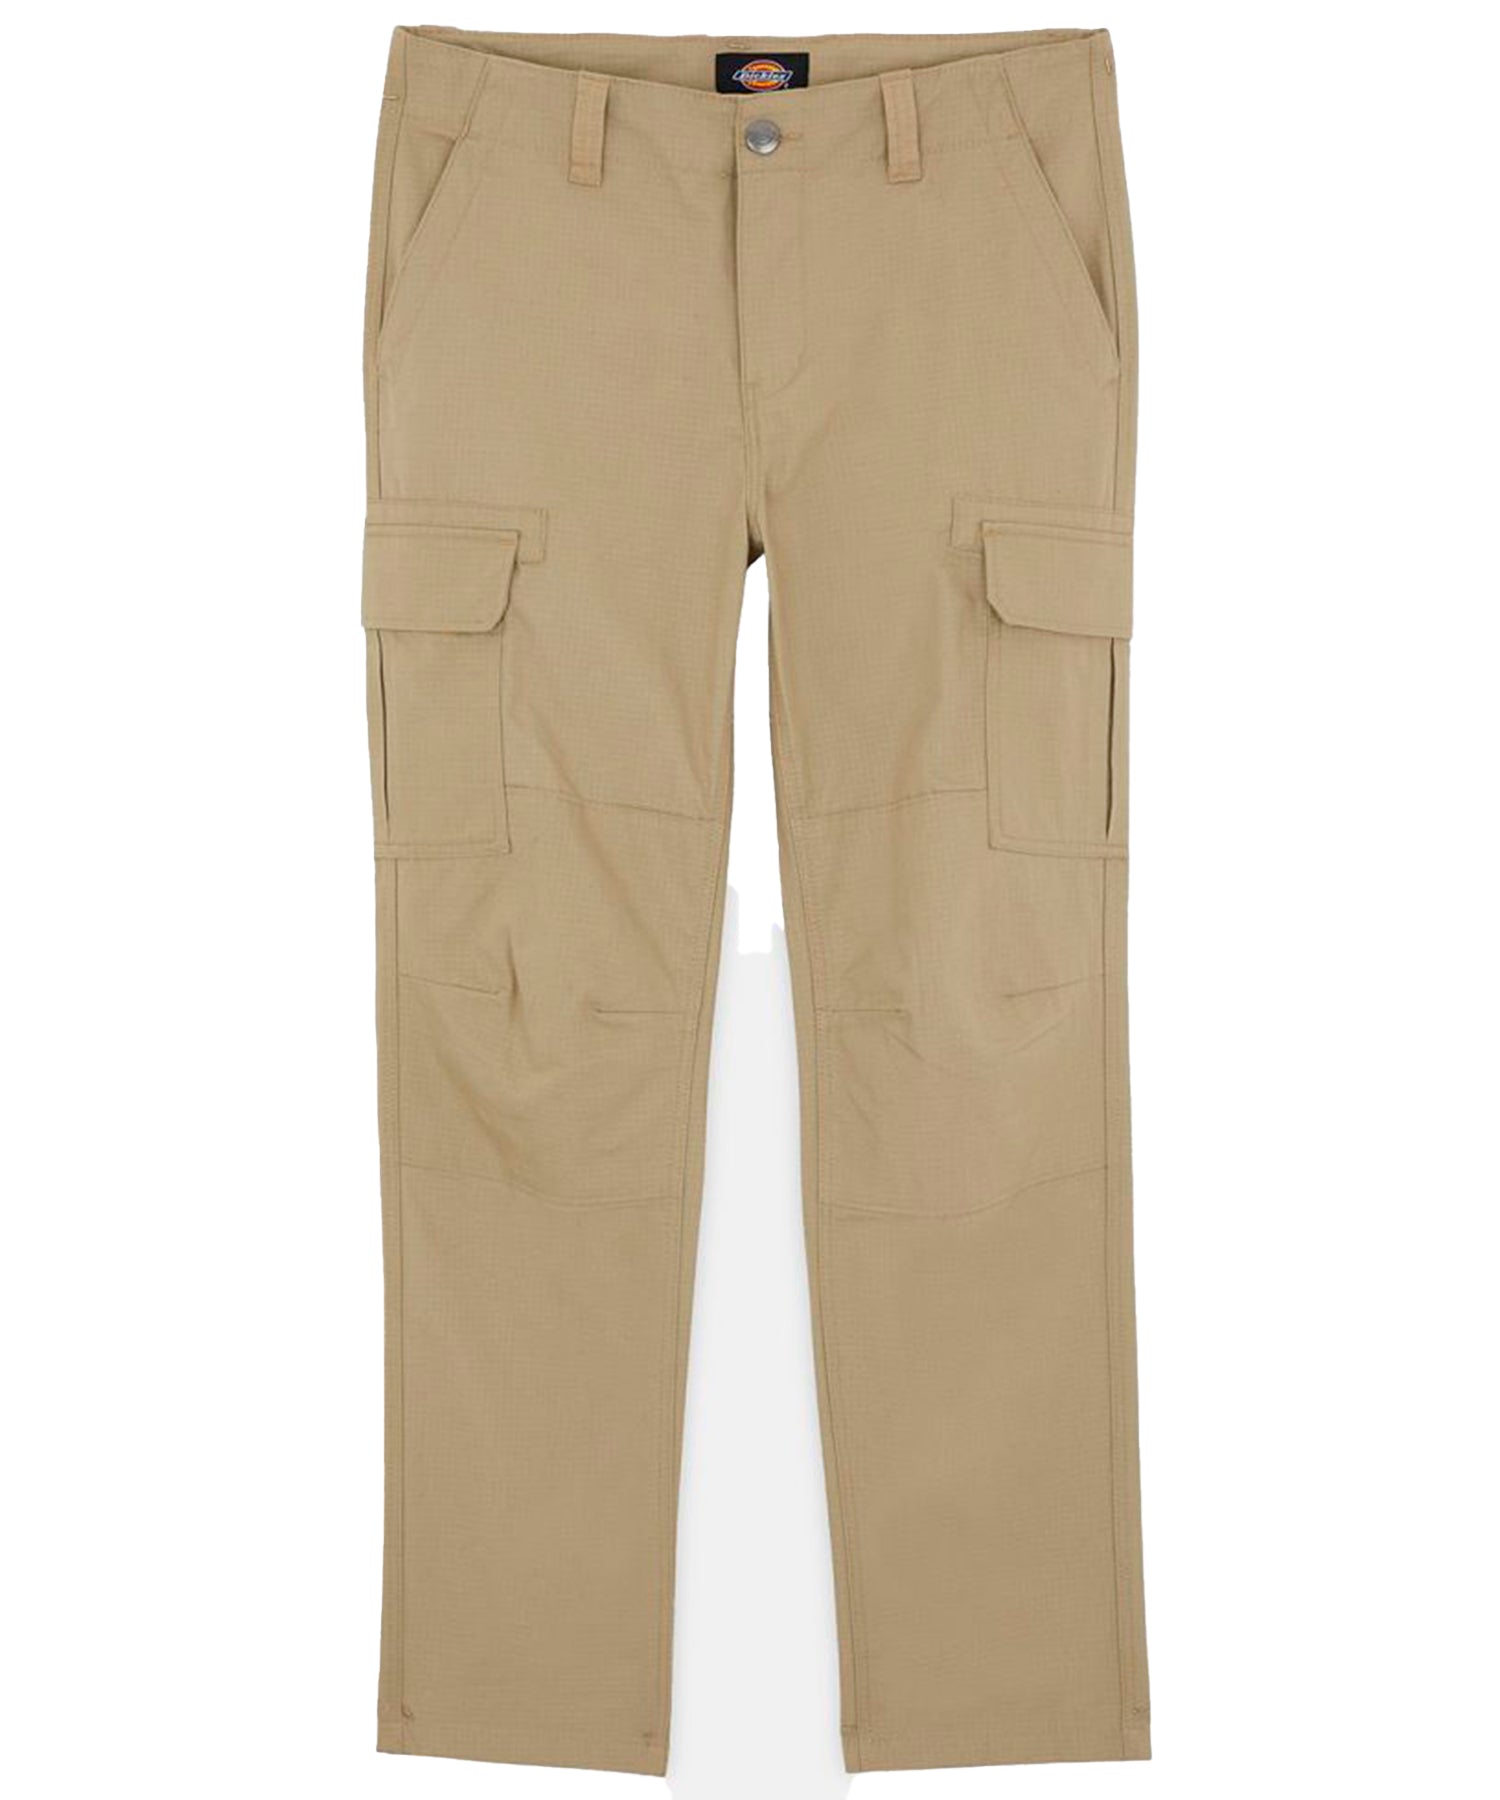 dickies-pantalon-millerville-color-kakhi-tipo-cargo-algodón-antidesgarros-entallado-recto-corte-holgado